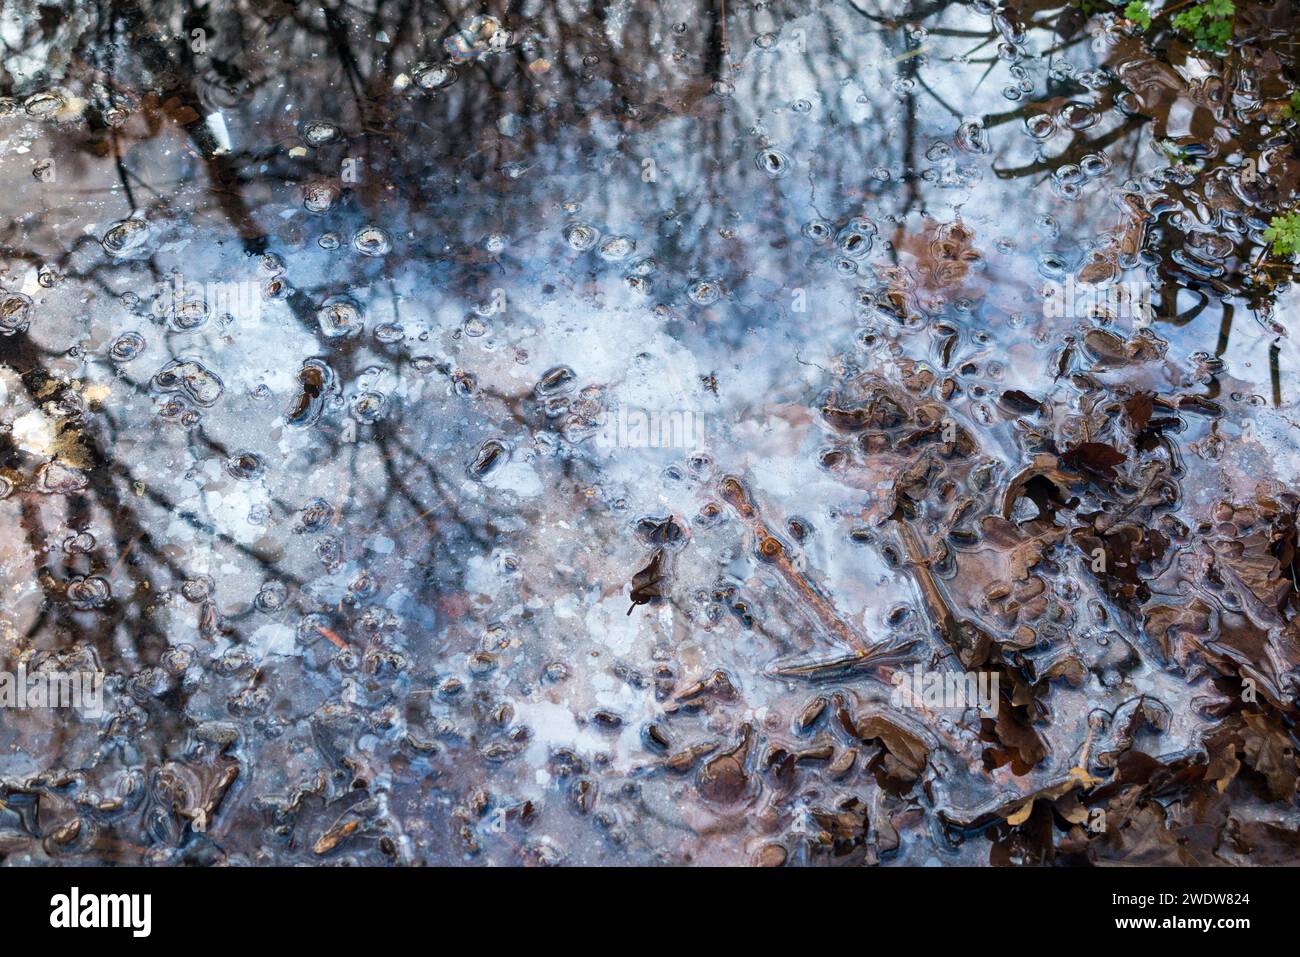 Piscine d'eau / bassin / ruisseau lent pollué par de l'huile ou de la graisse de surface / flottante. West End Common, près d'Esher, Surrey. ROYAUME-UNI. (137) Banque D'Images